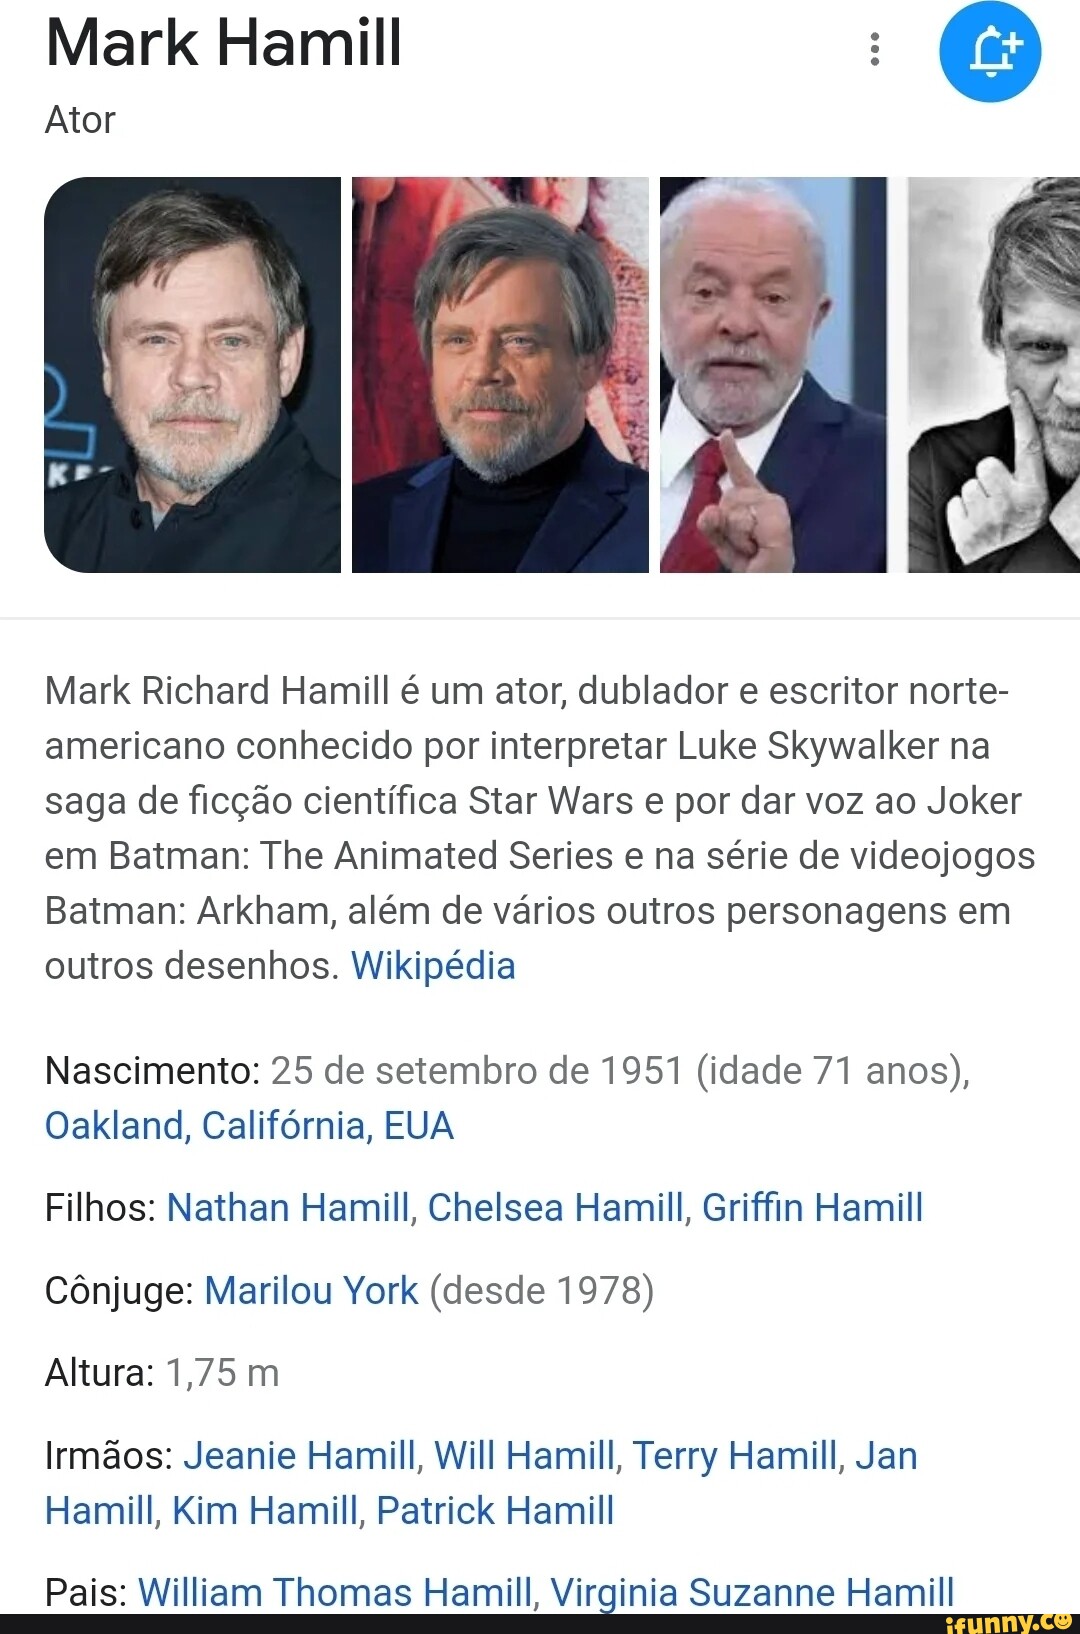 Mark Hamill Ator Mark Richard Hamill é um ator, dublador e escritor norte-  americano conhecido por